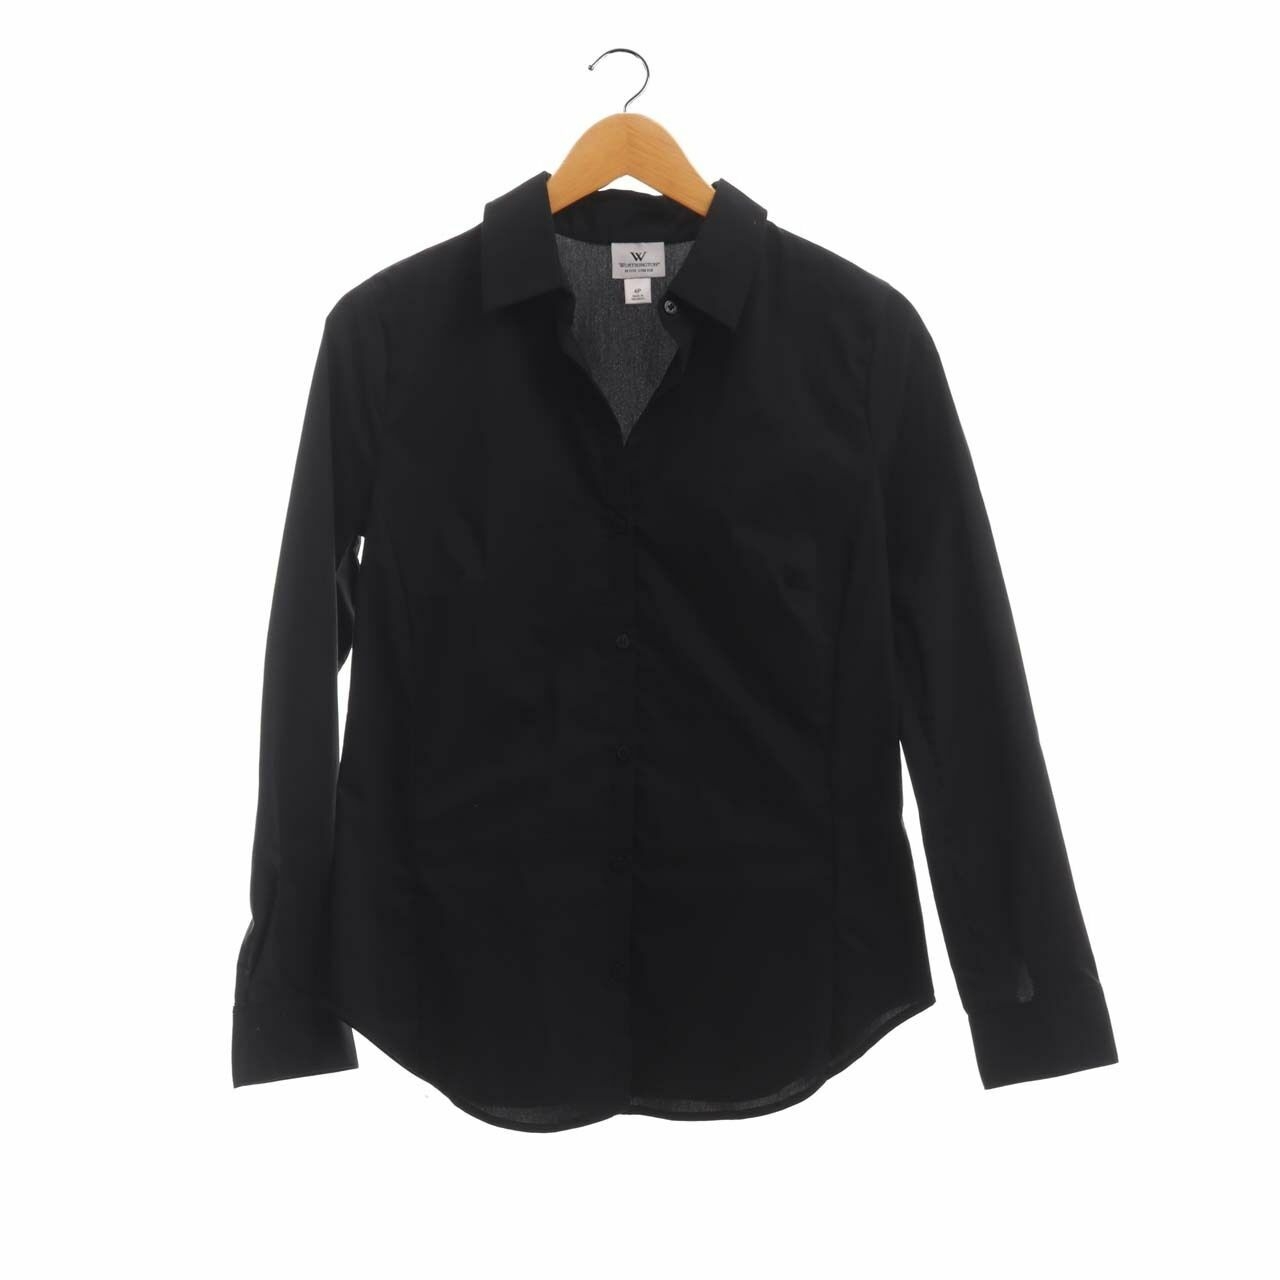 Worthington Black Long Sleeve Shirt